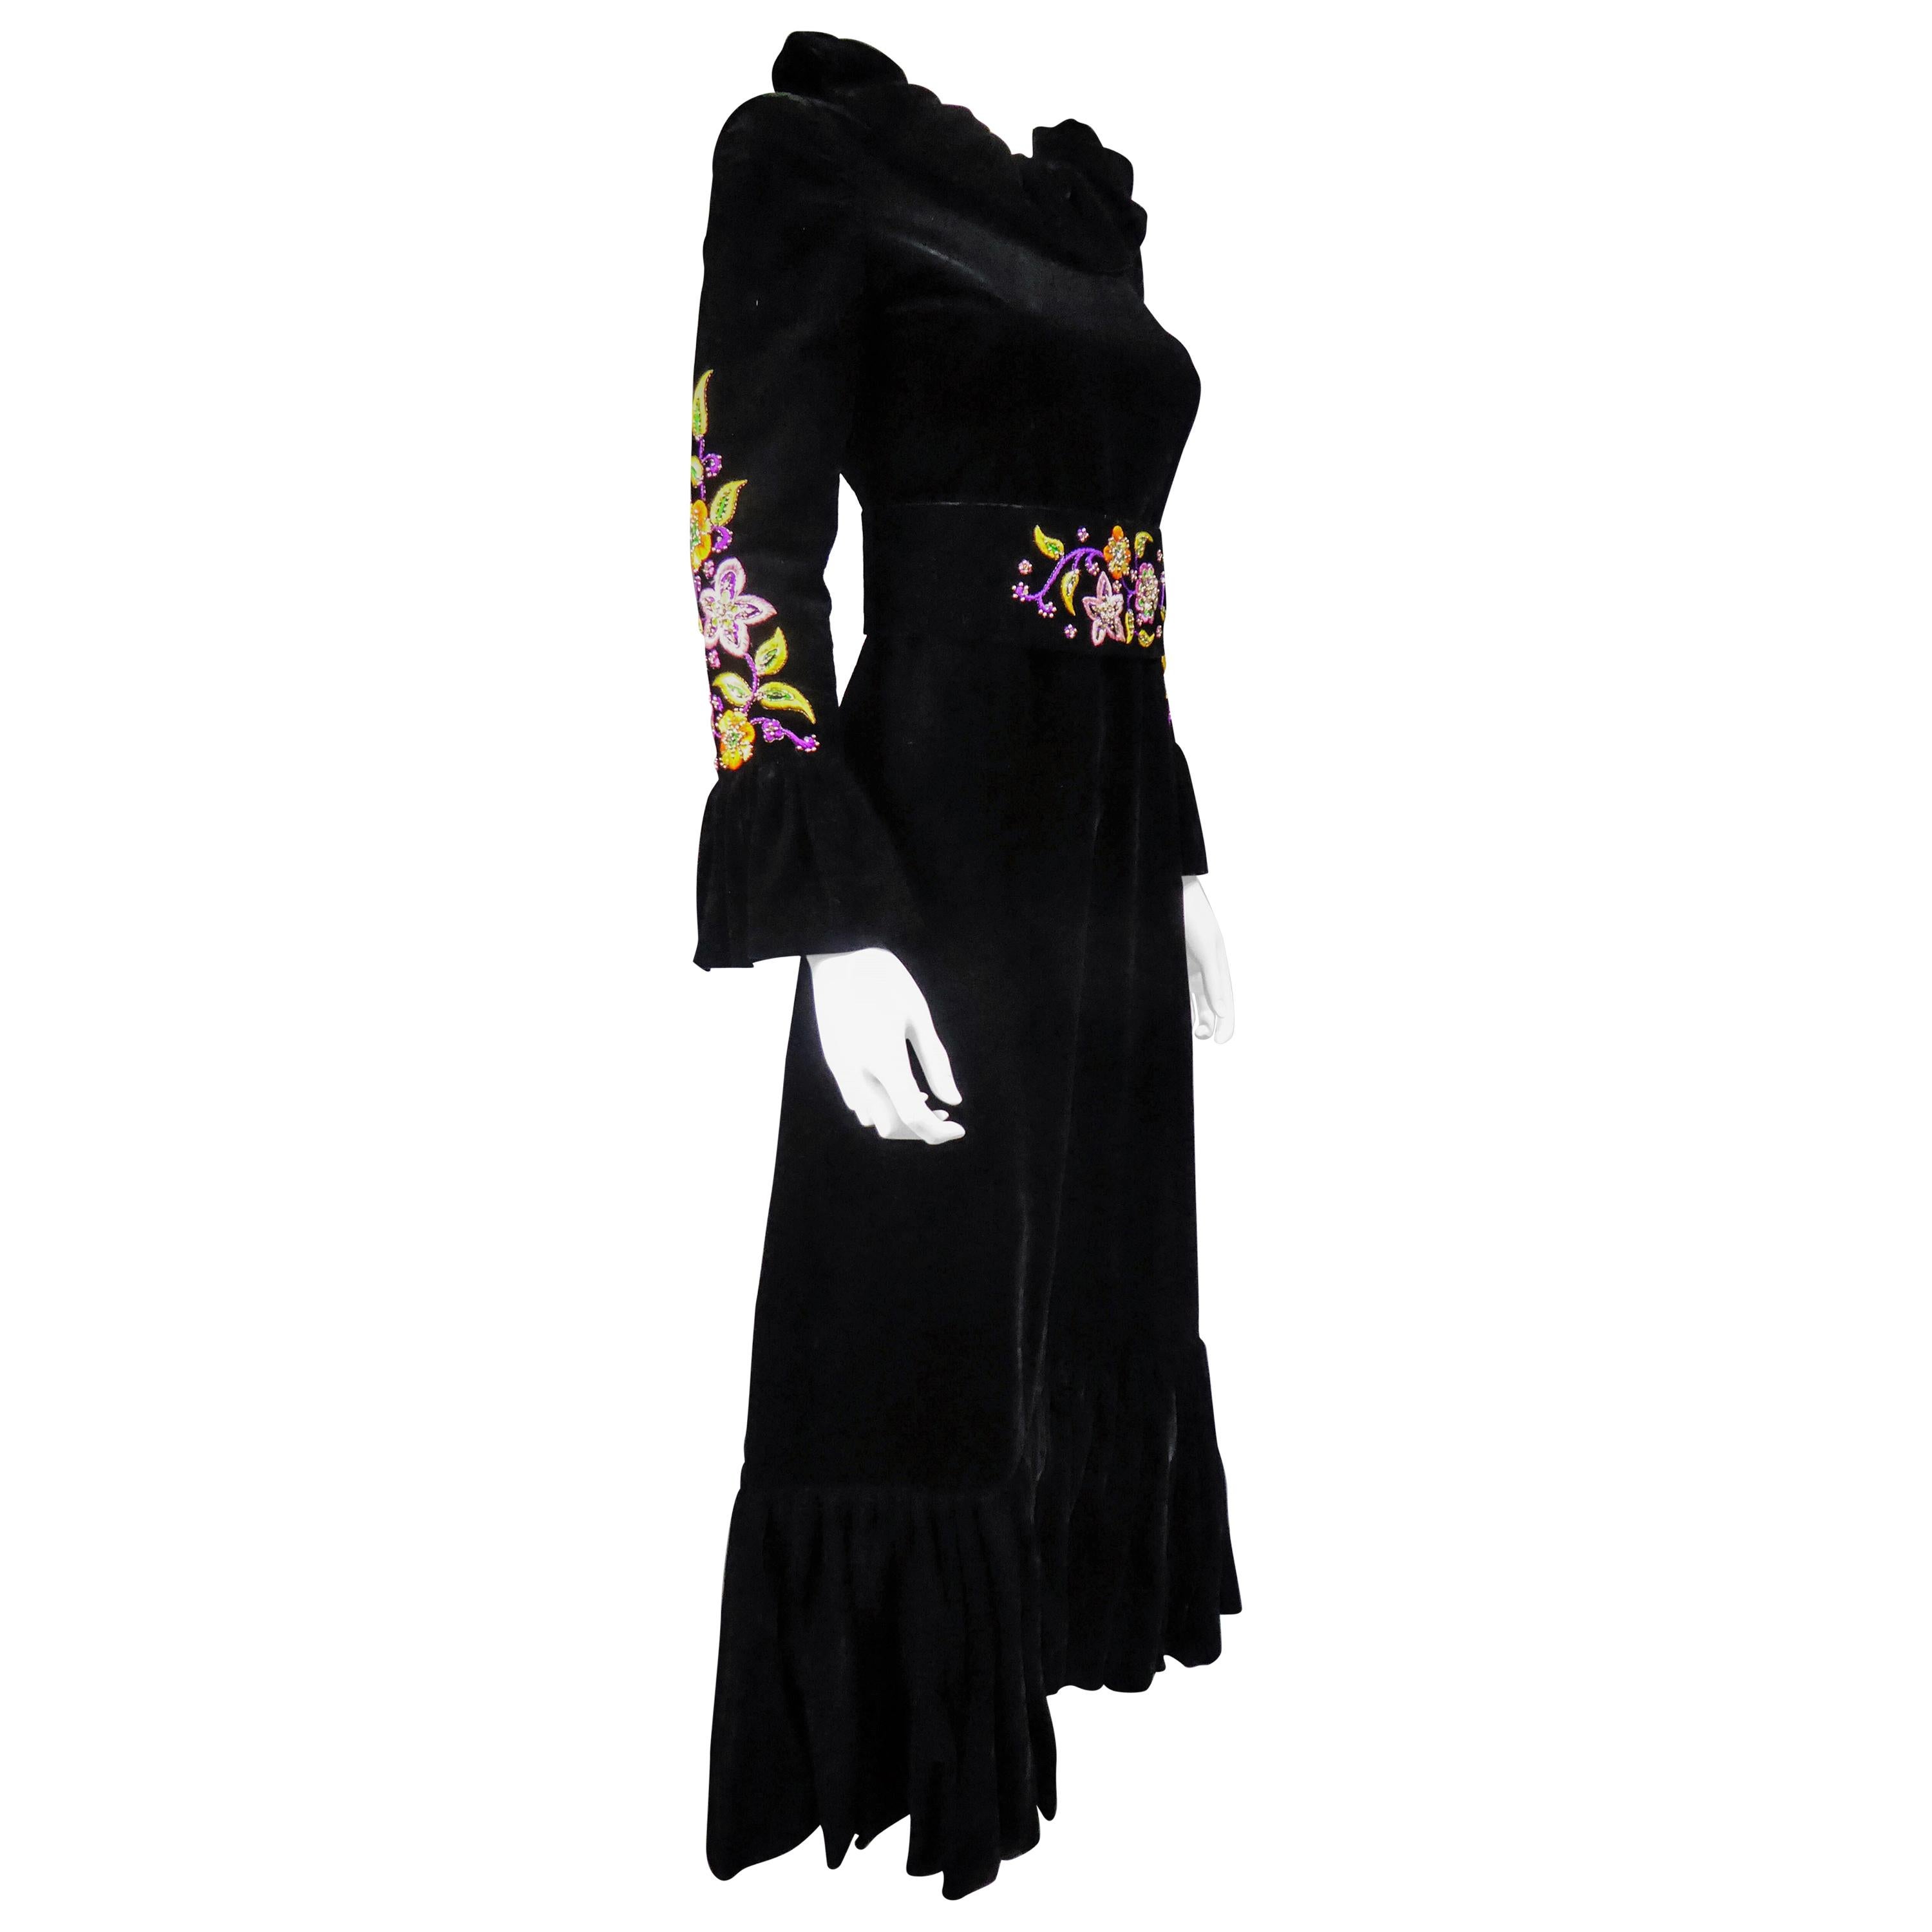 Um 1990
Frankreich

Langes Abendkleid aus schwarzem Seidensamt von Jean-Louis Scherrer Haute Couture aus den 1990er Jahren. Plissierter Kragen aus Bouillonné-Samt mit Rüsche an den Ärmeln und am ausgestellten unteren Teil des Kleides. Psychedelische